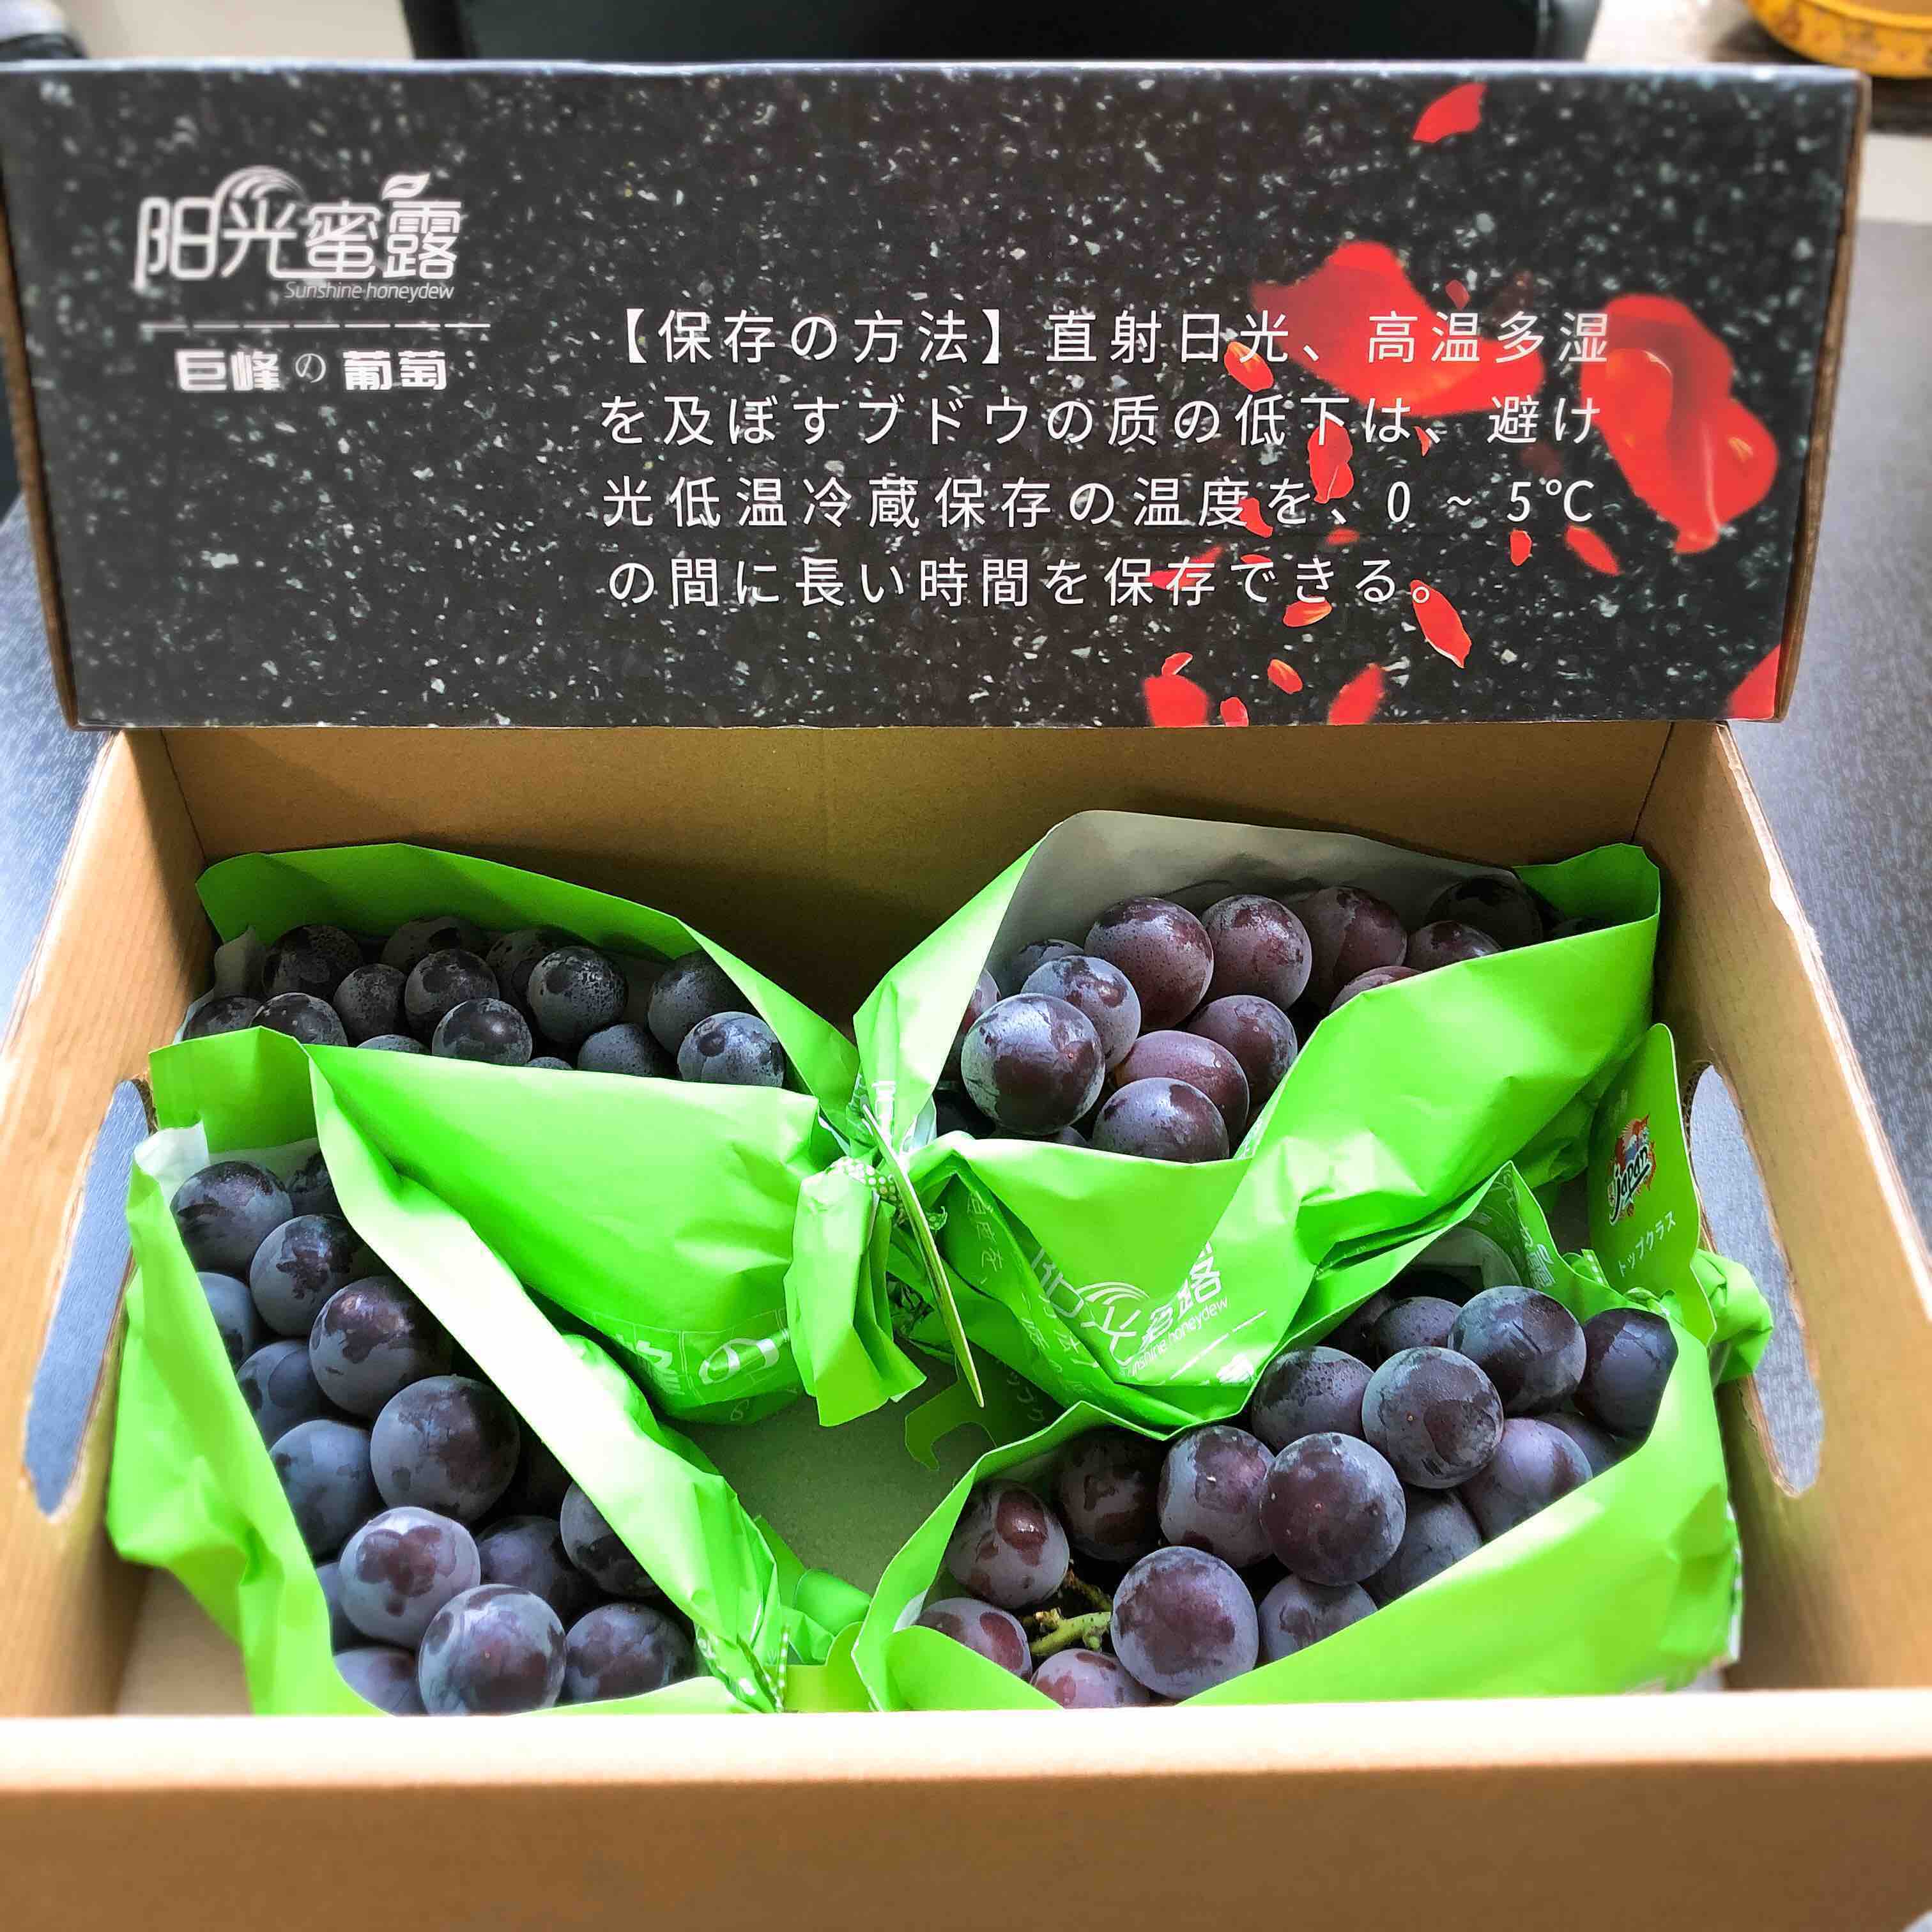 阳光蜜露 巨峰葡萄,日本品种 云南种植,口感纯甜无酸,温室大棚种植,无